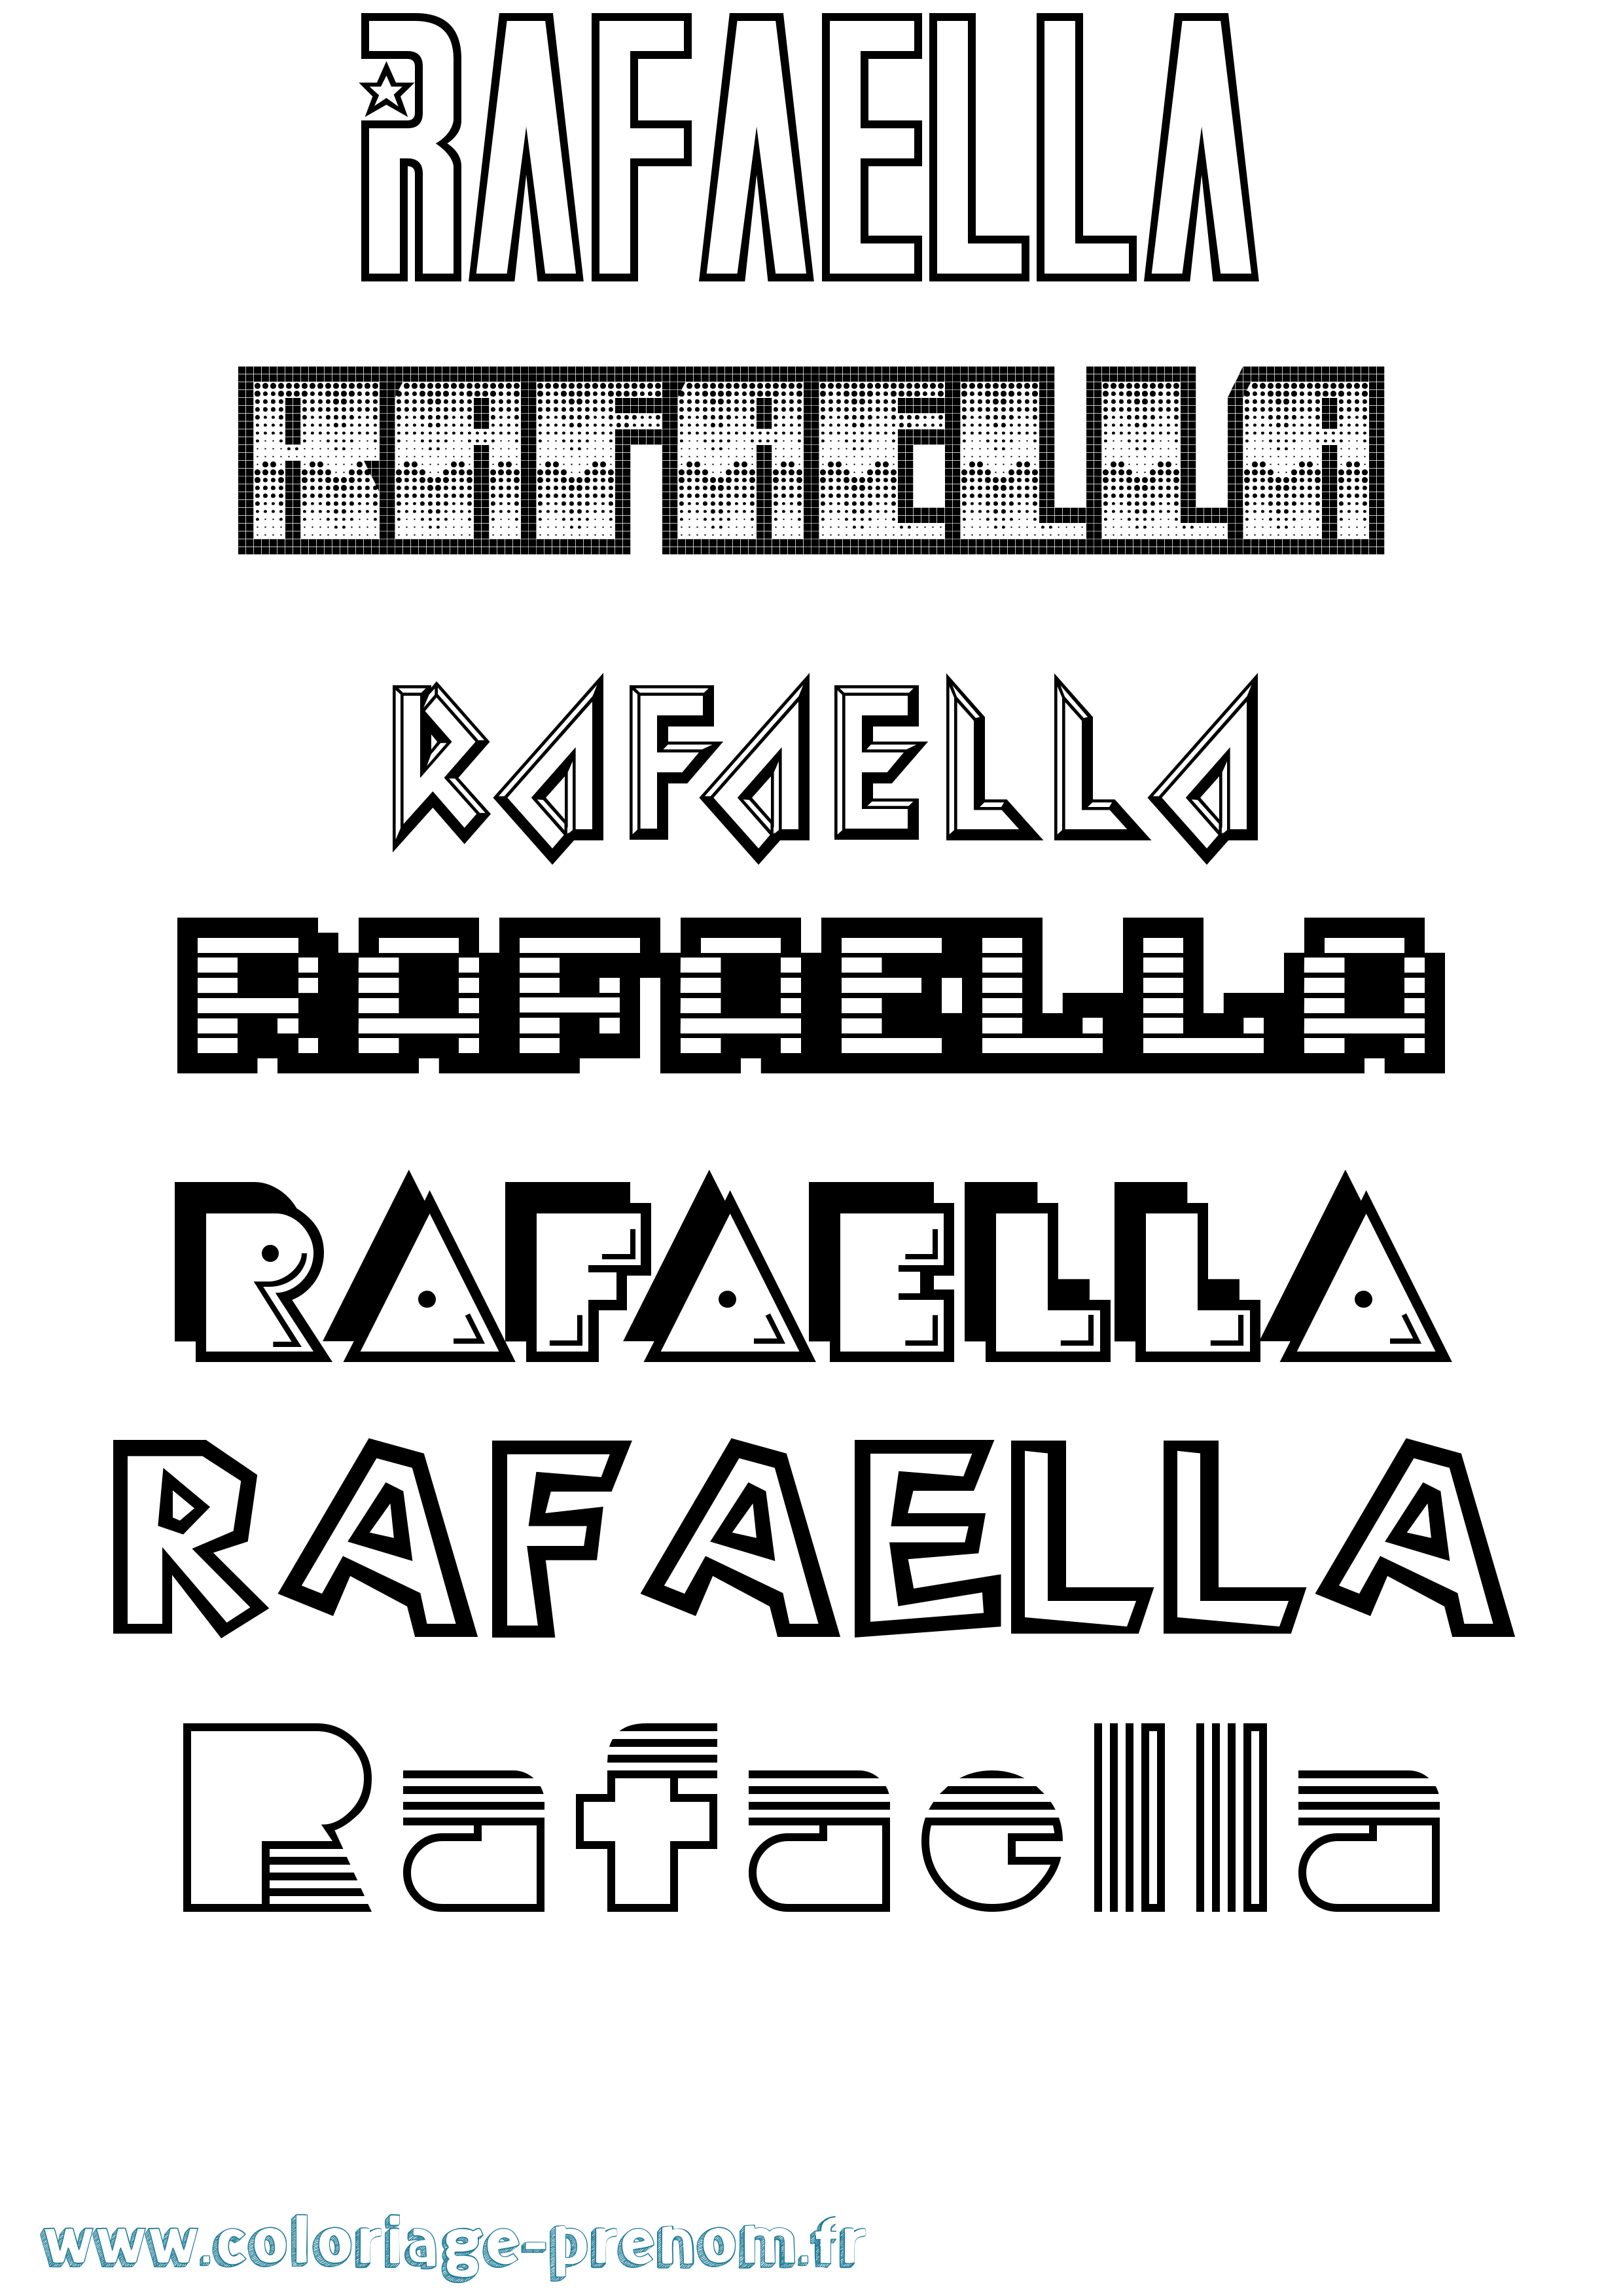 Coloriage prénom Rafaella Jeux Vidéos